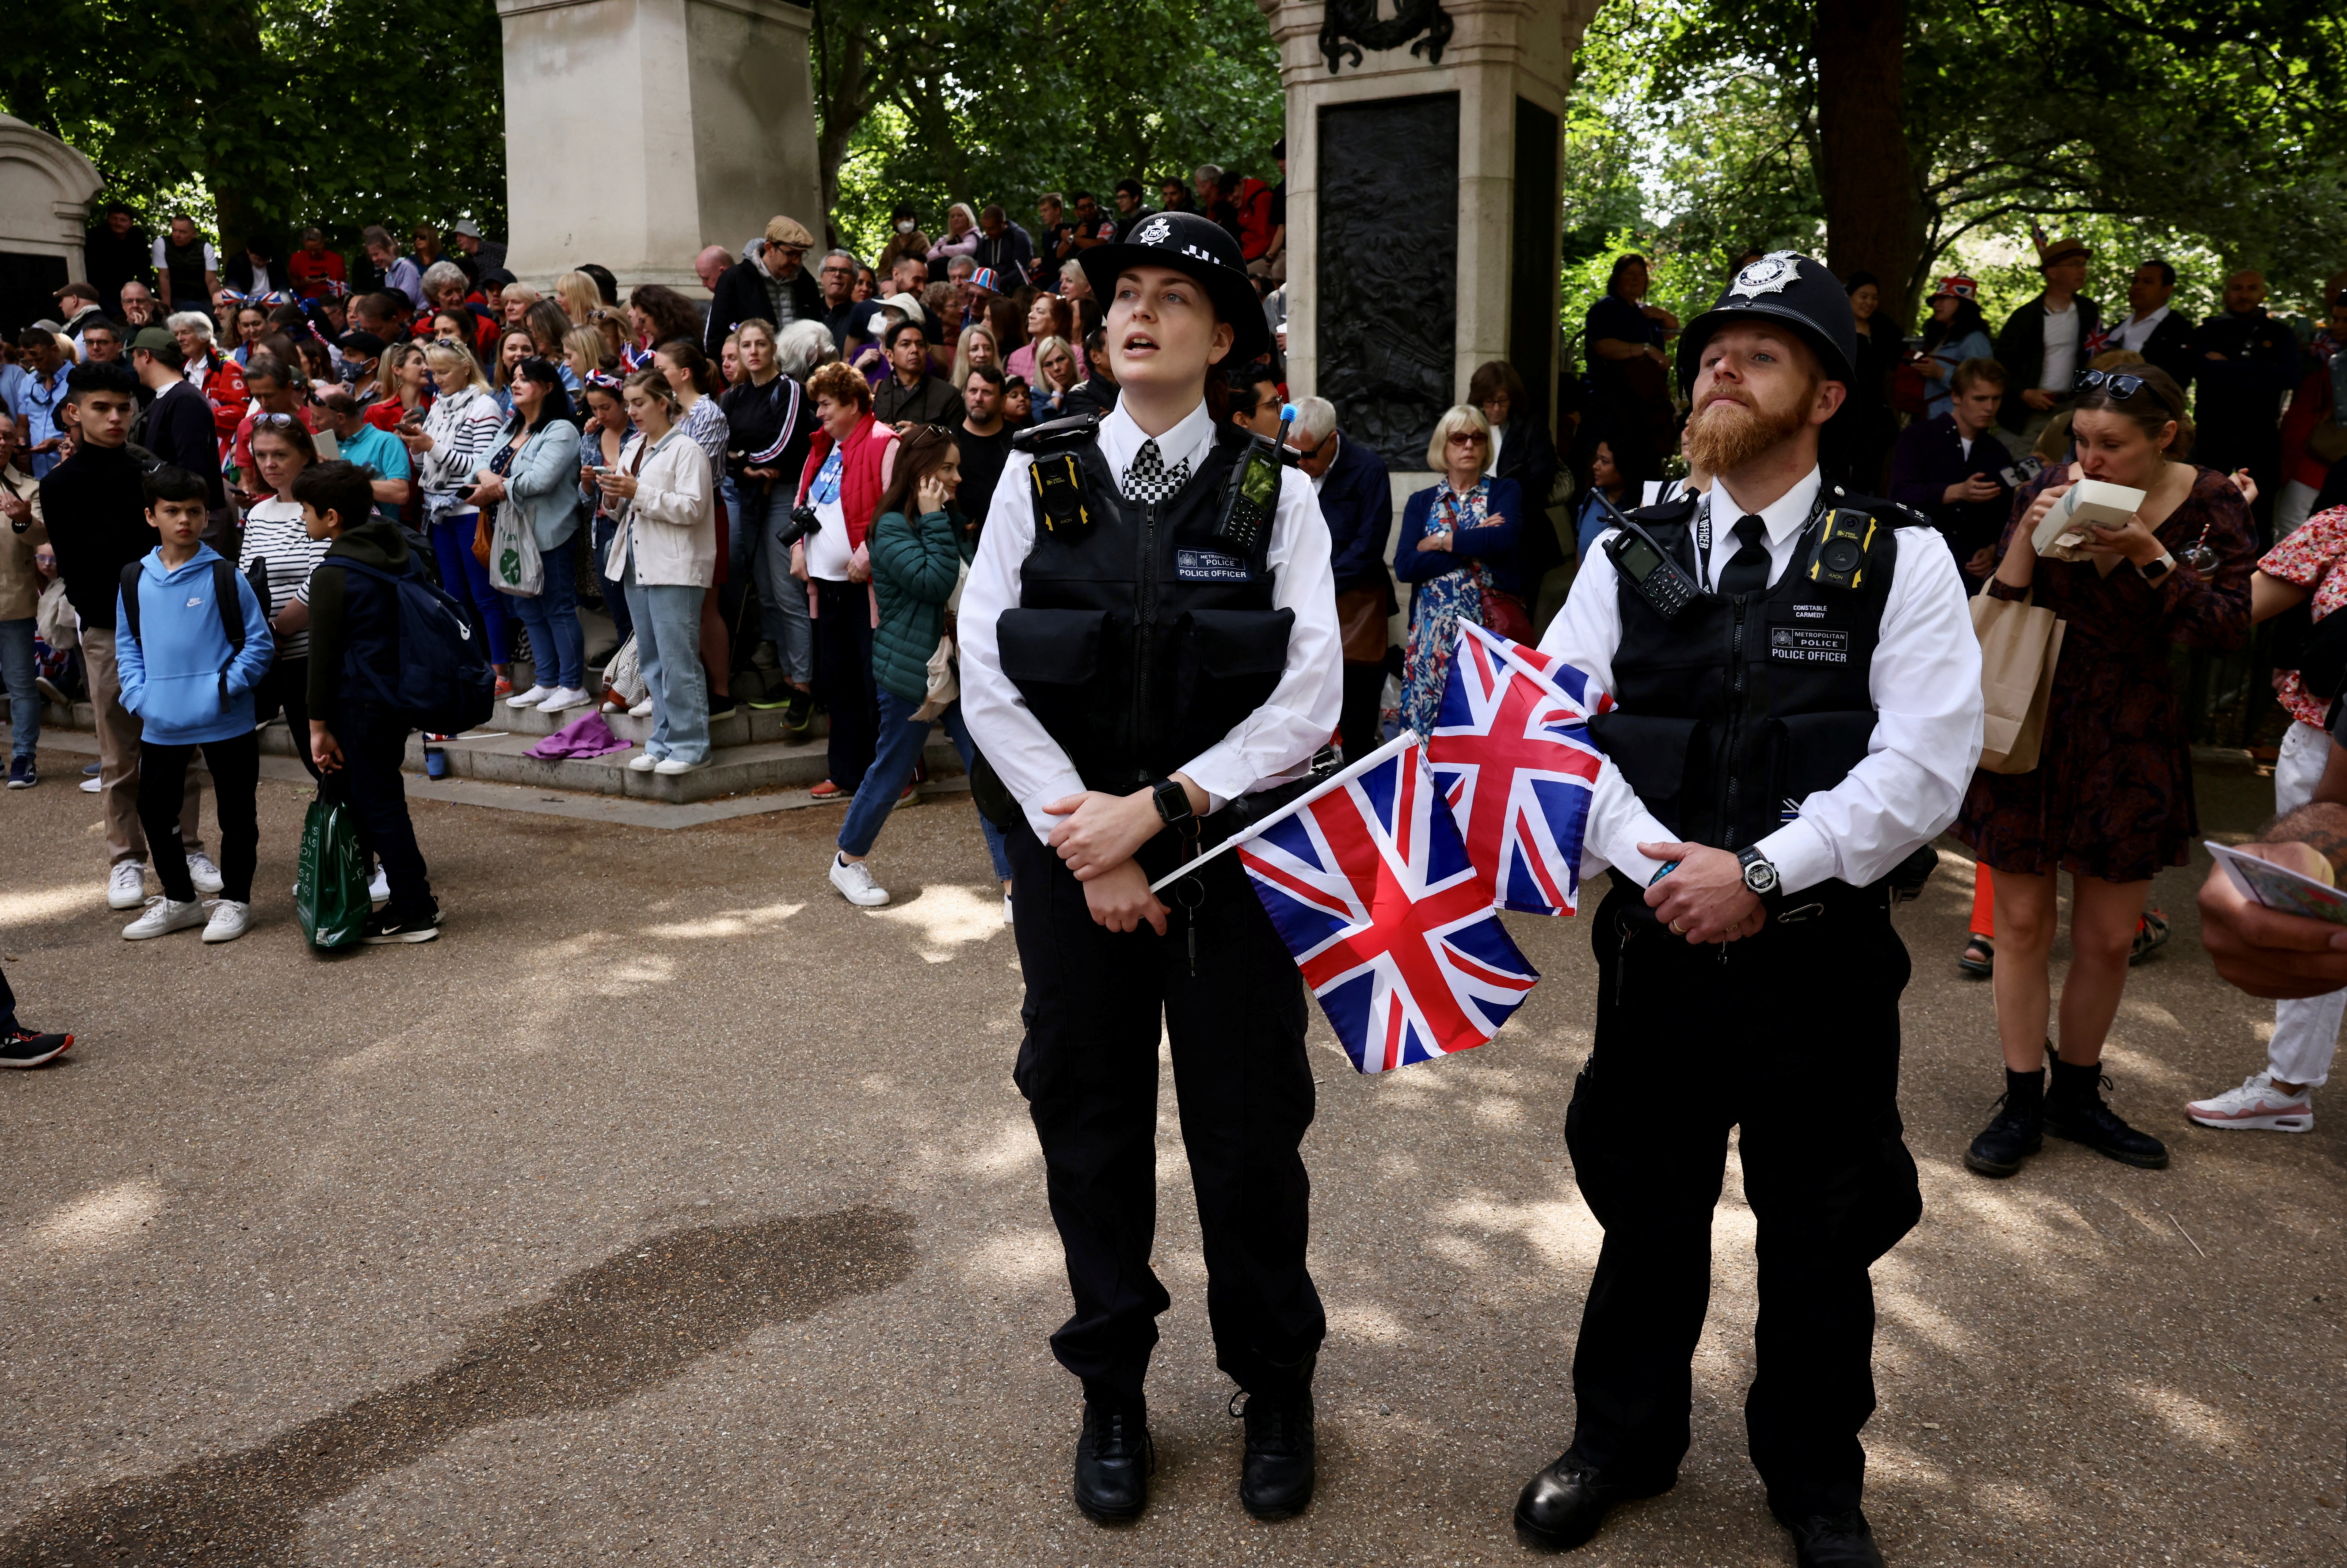 Los oficiales de policía llevan banderas Union Jack cerca del Palacio de Buckingham durante las celebraciones del Jubileo de Platino de la Reina, en Londres, Gran Bretaña, el 2 de junio de 2022. REUTERS/Kevin Coombs